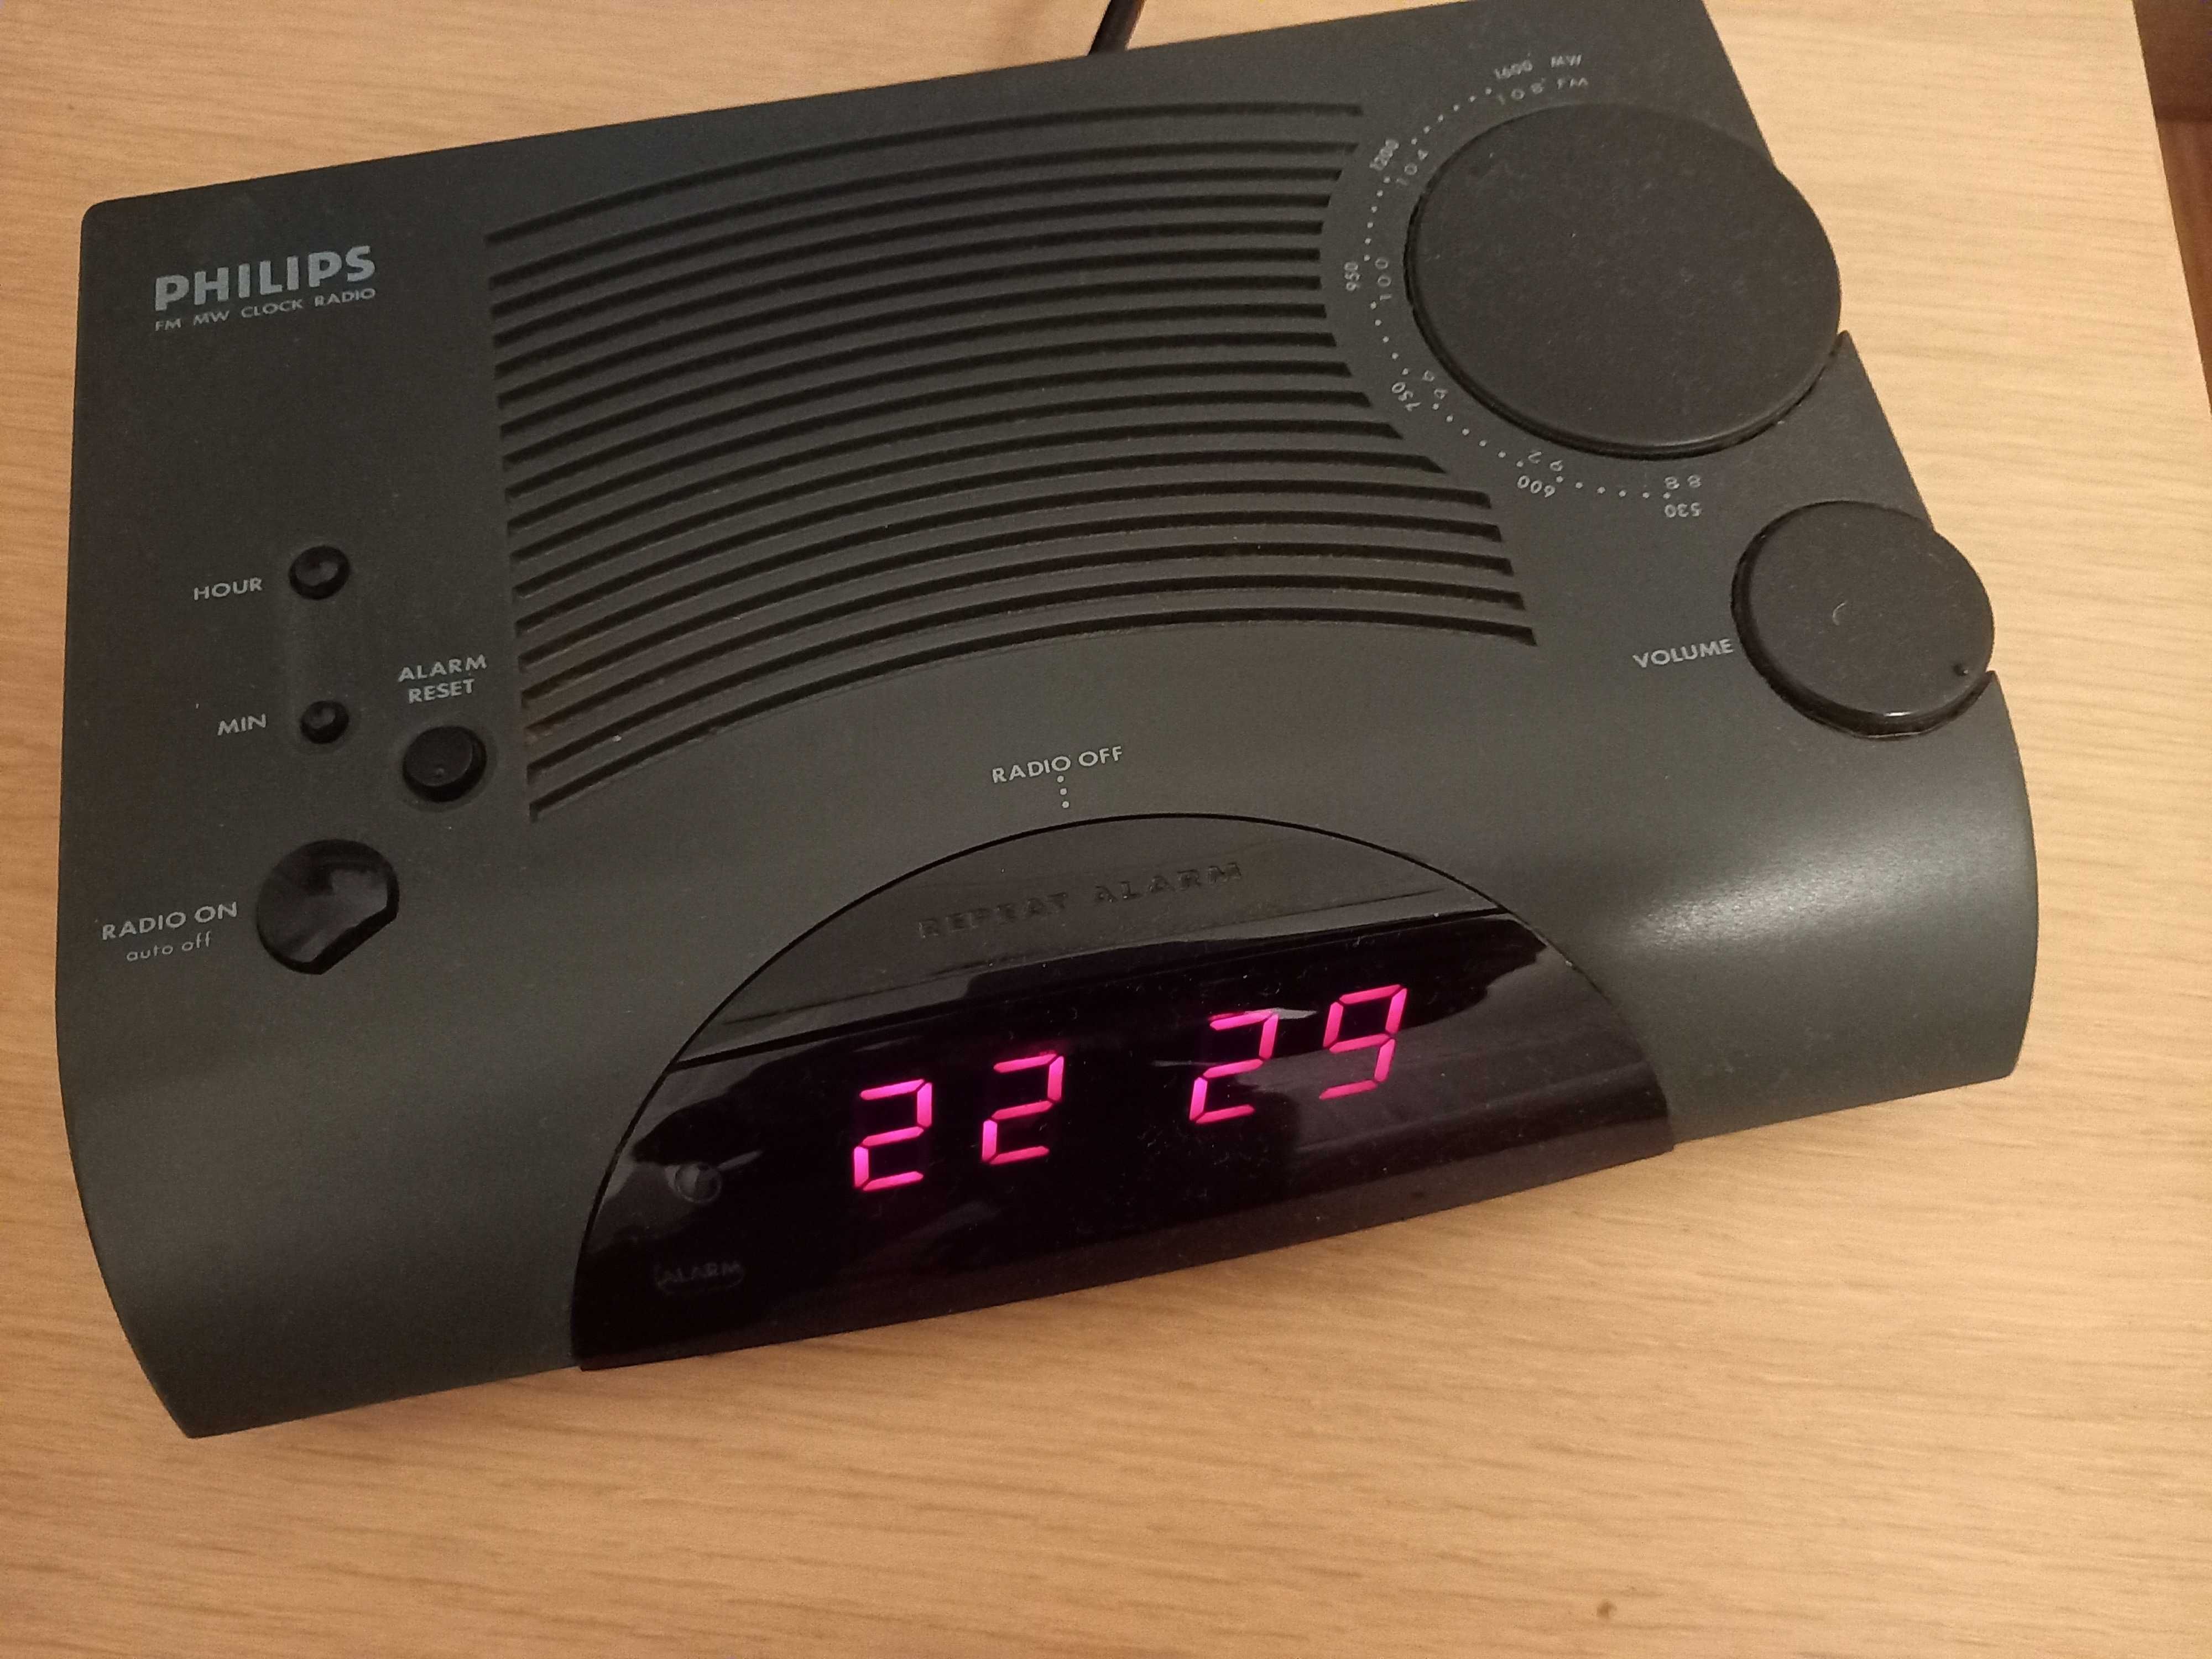 Rádio despertador marca Philips